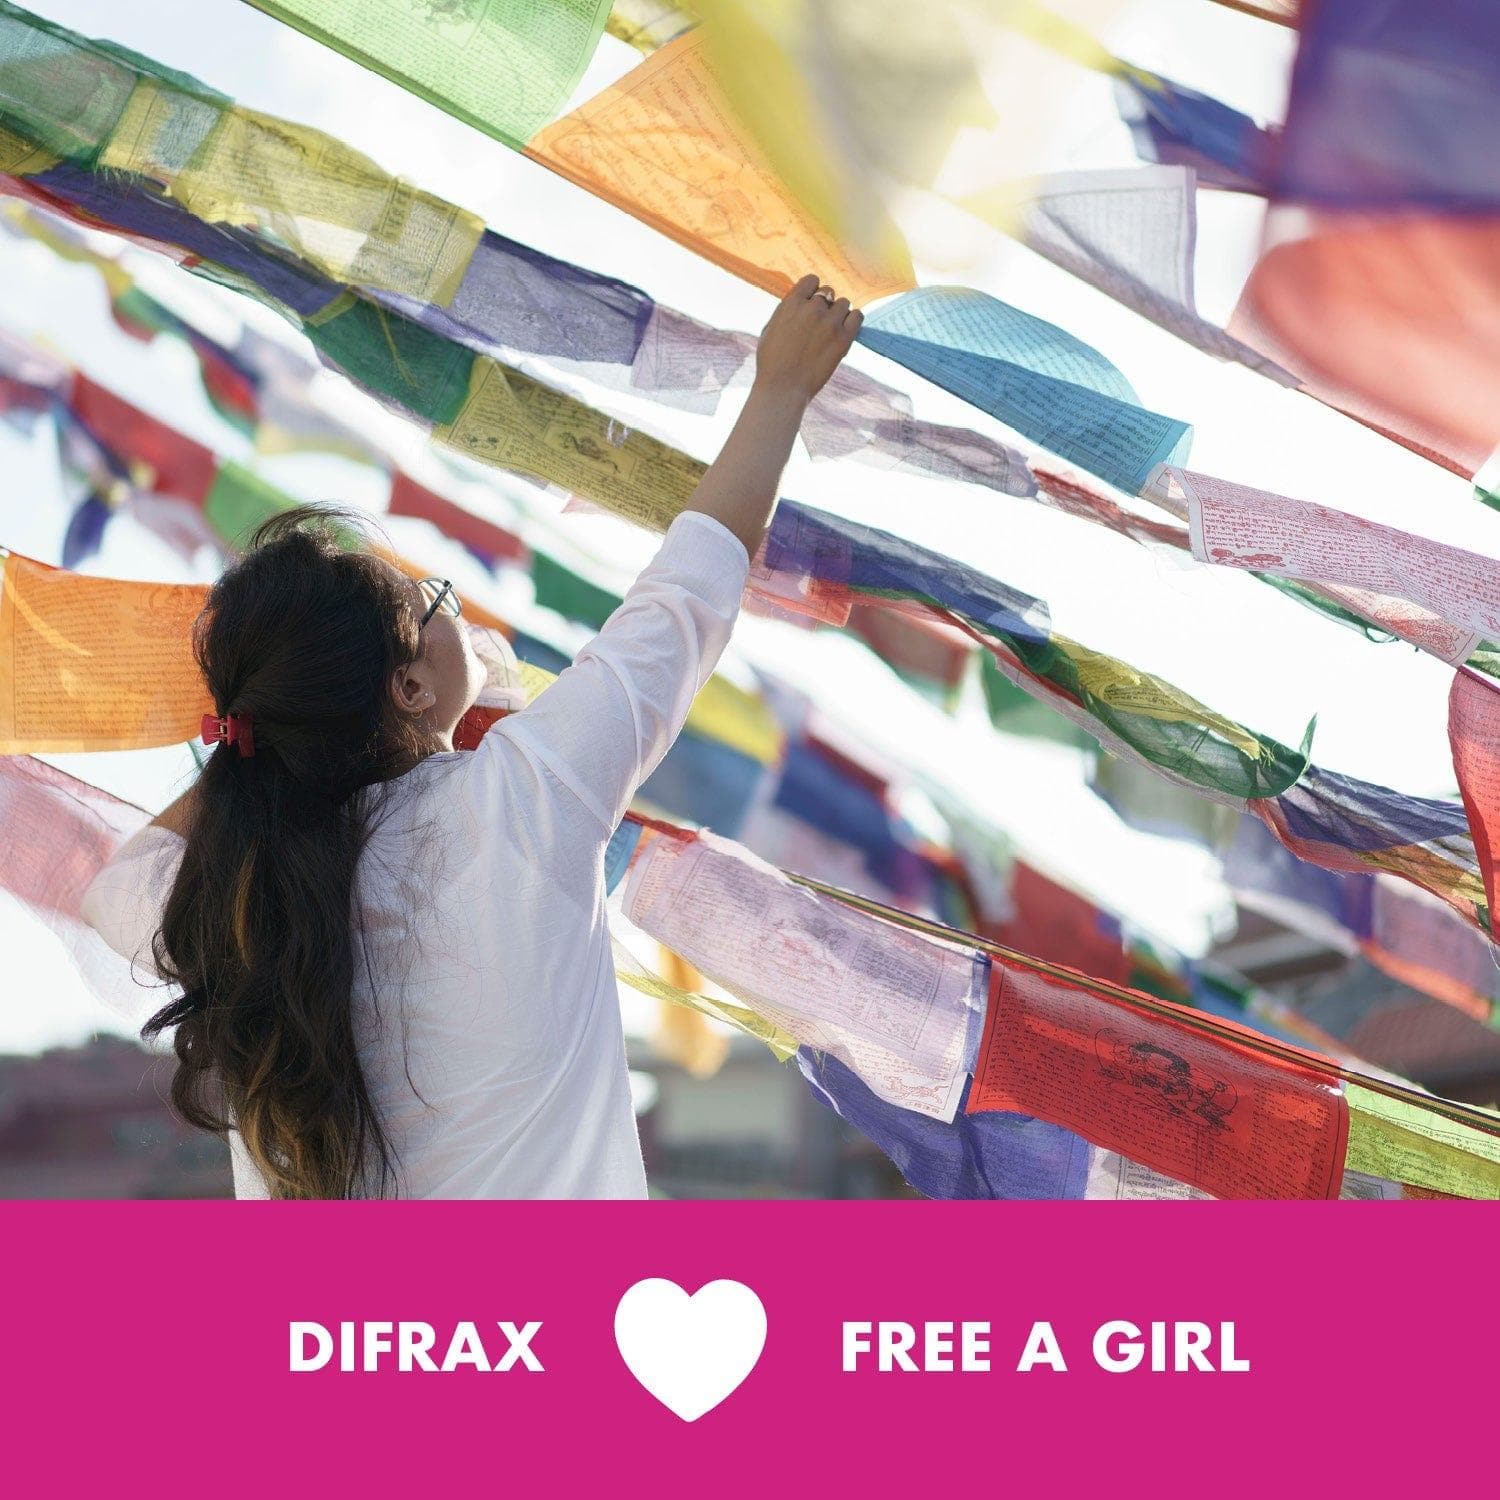 Donatie Free a Girl 1 euro - Difrax